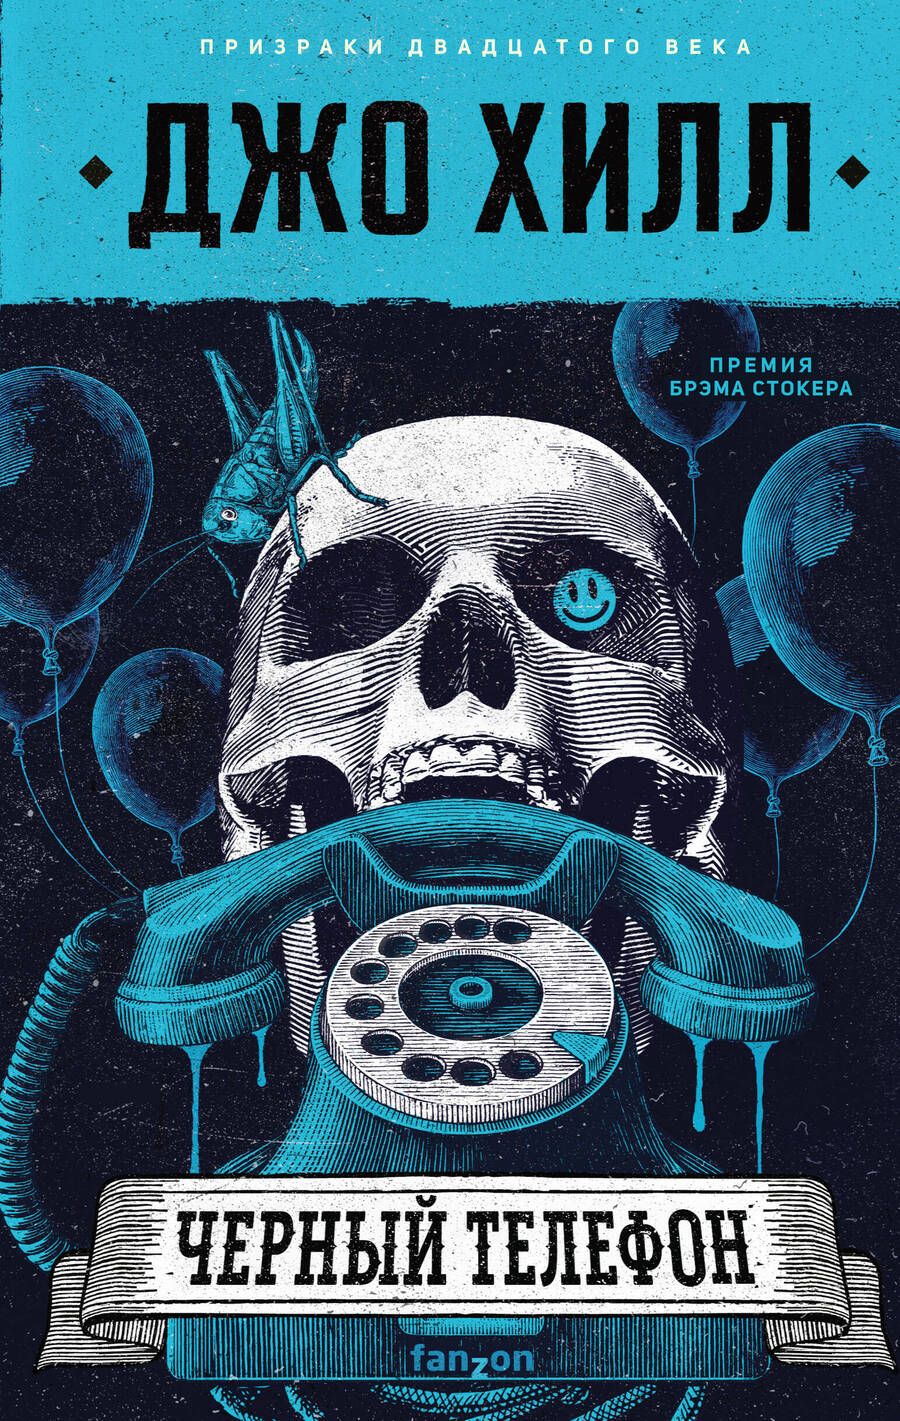 Обложка книги "Хилл: Черный телефон"